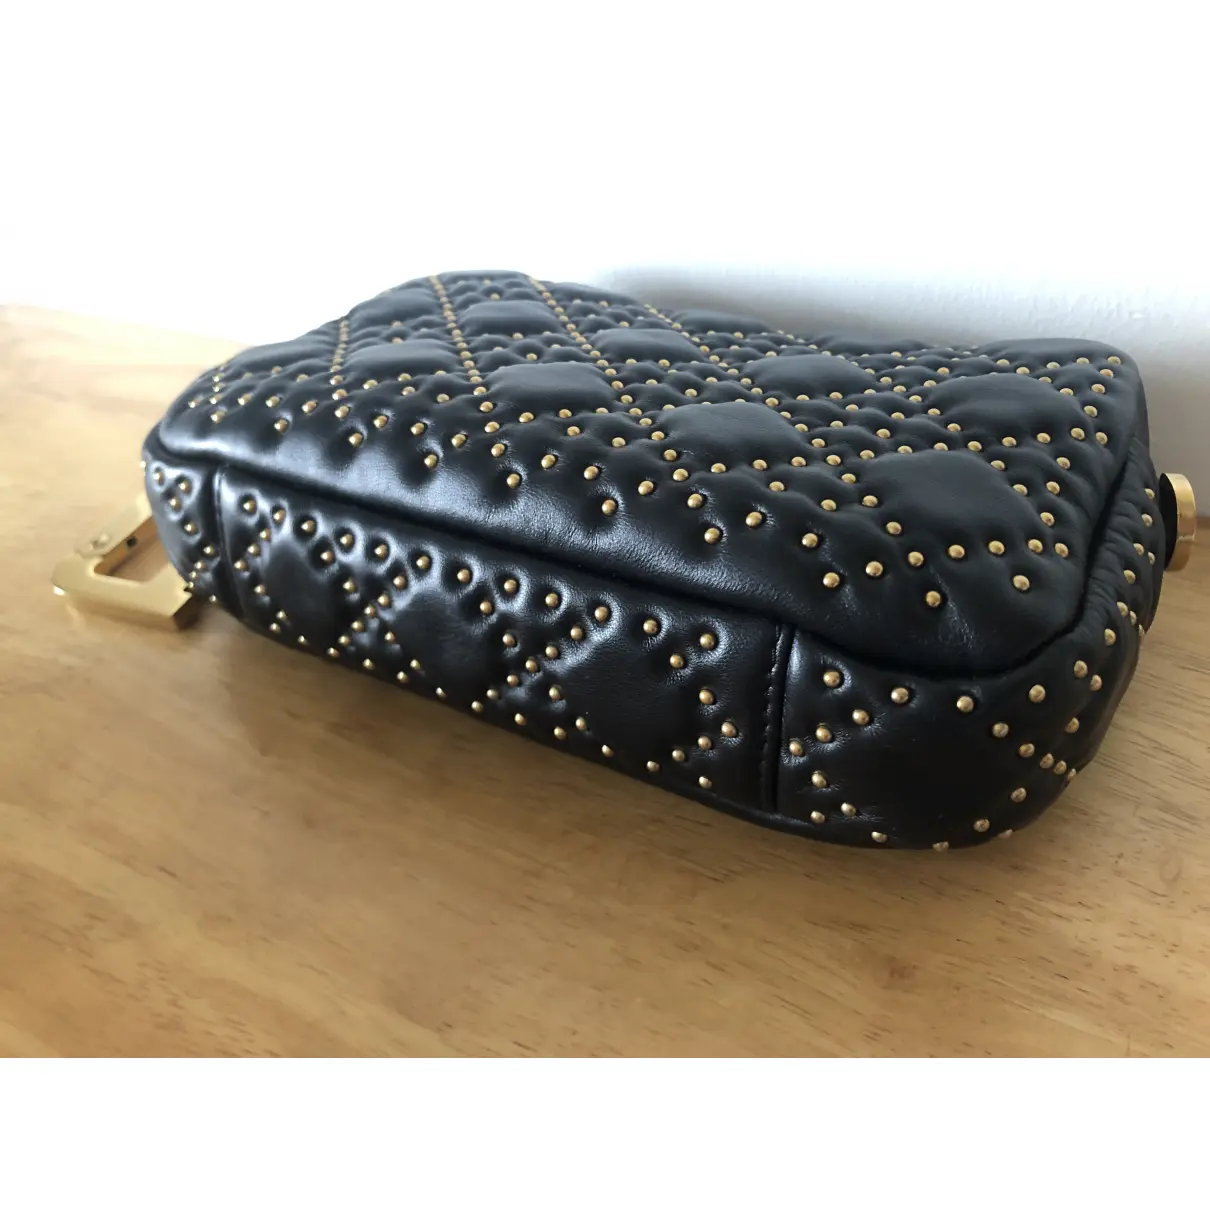 Diorquake leather clutch bag Dior